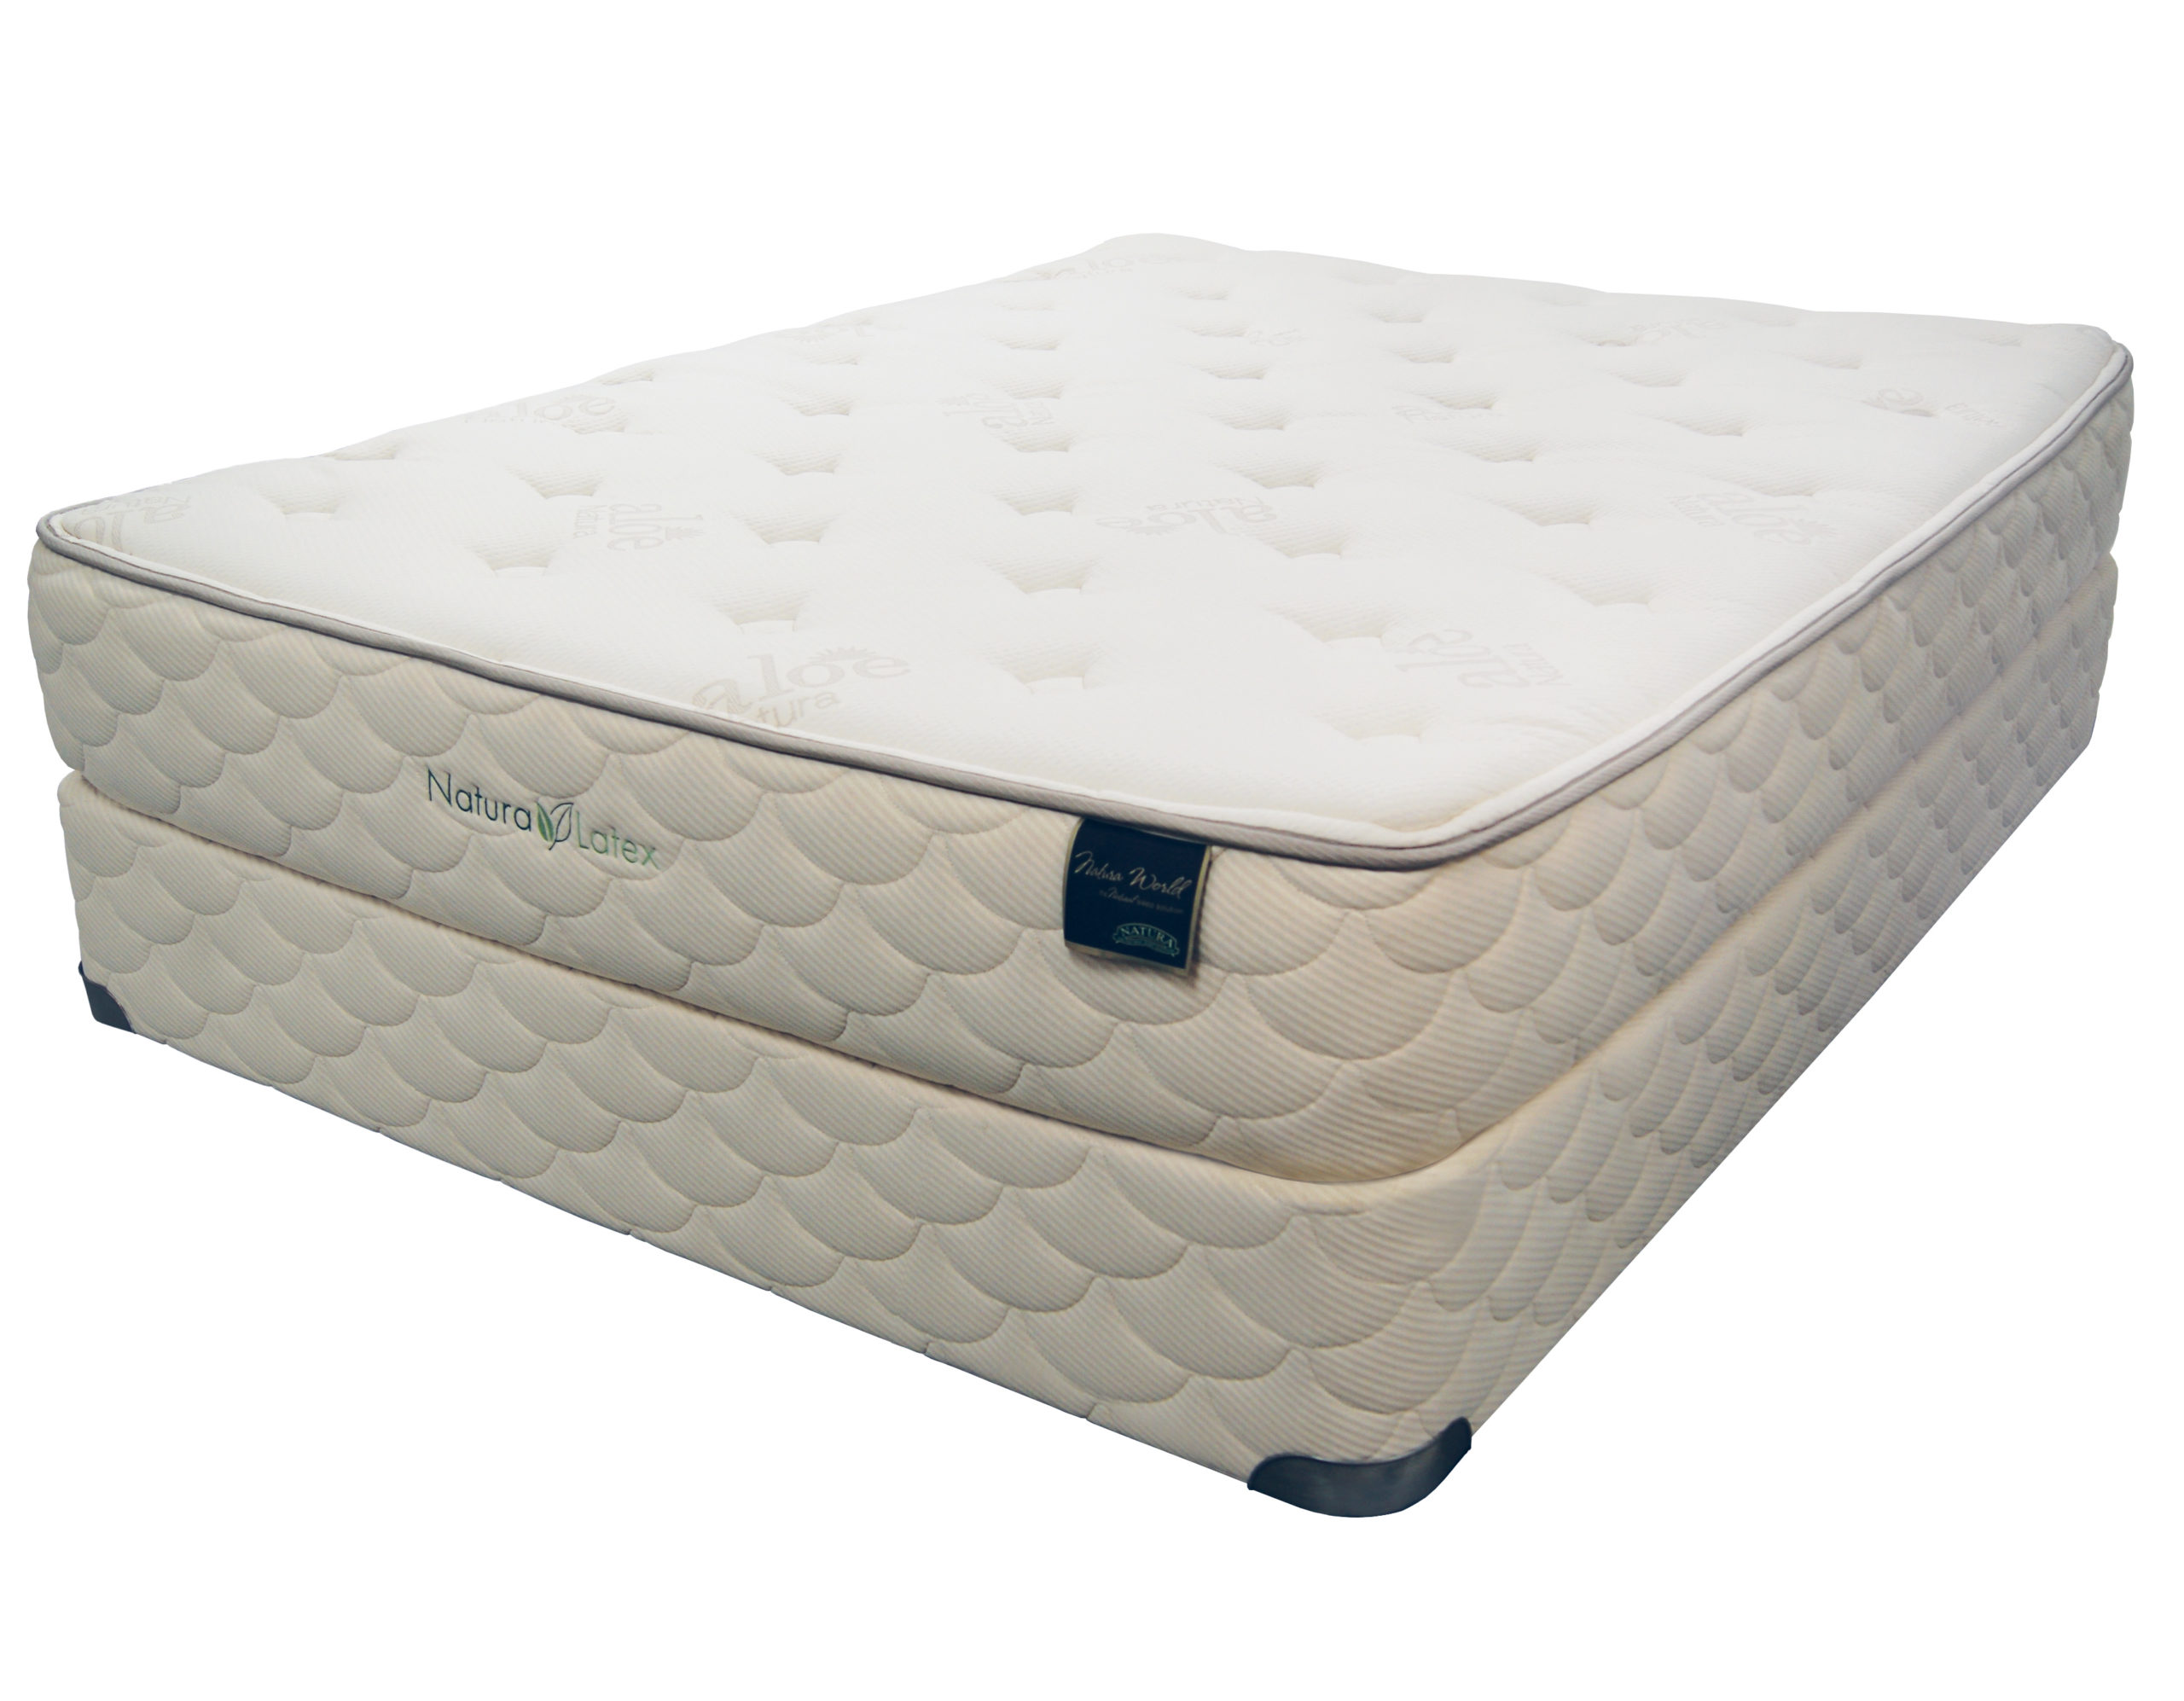 sears latex mattress topper